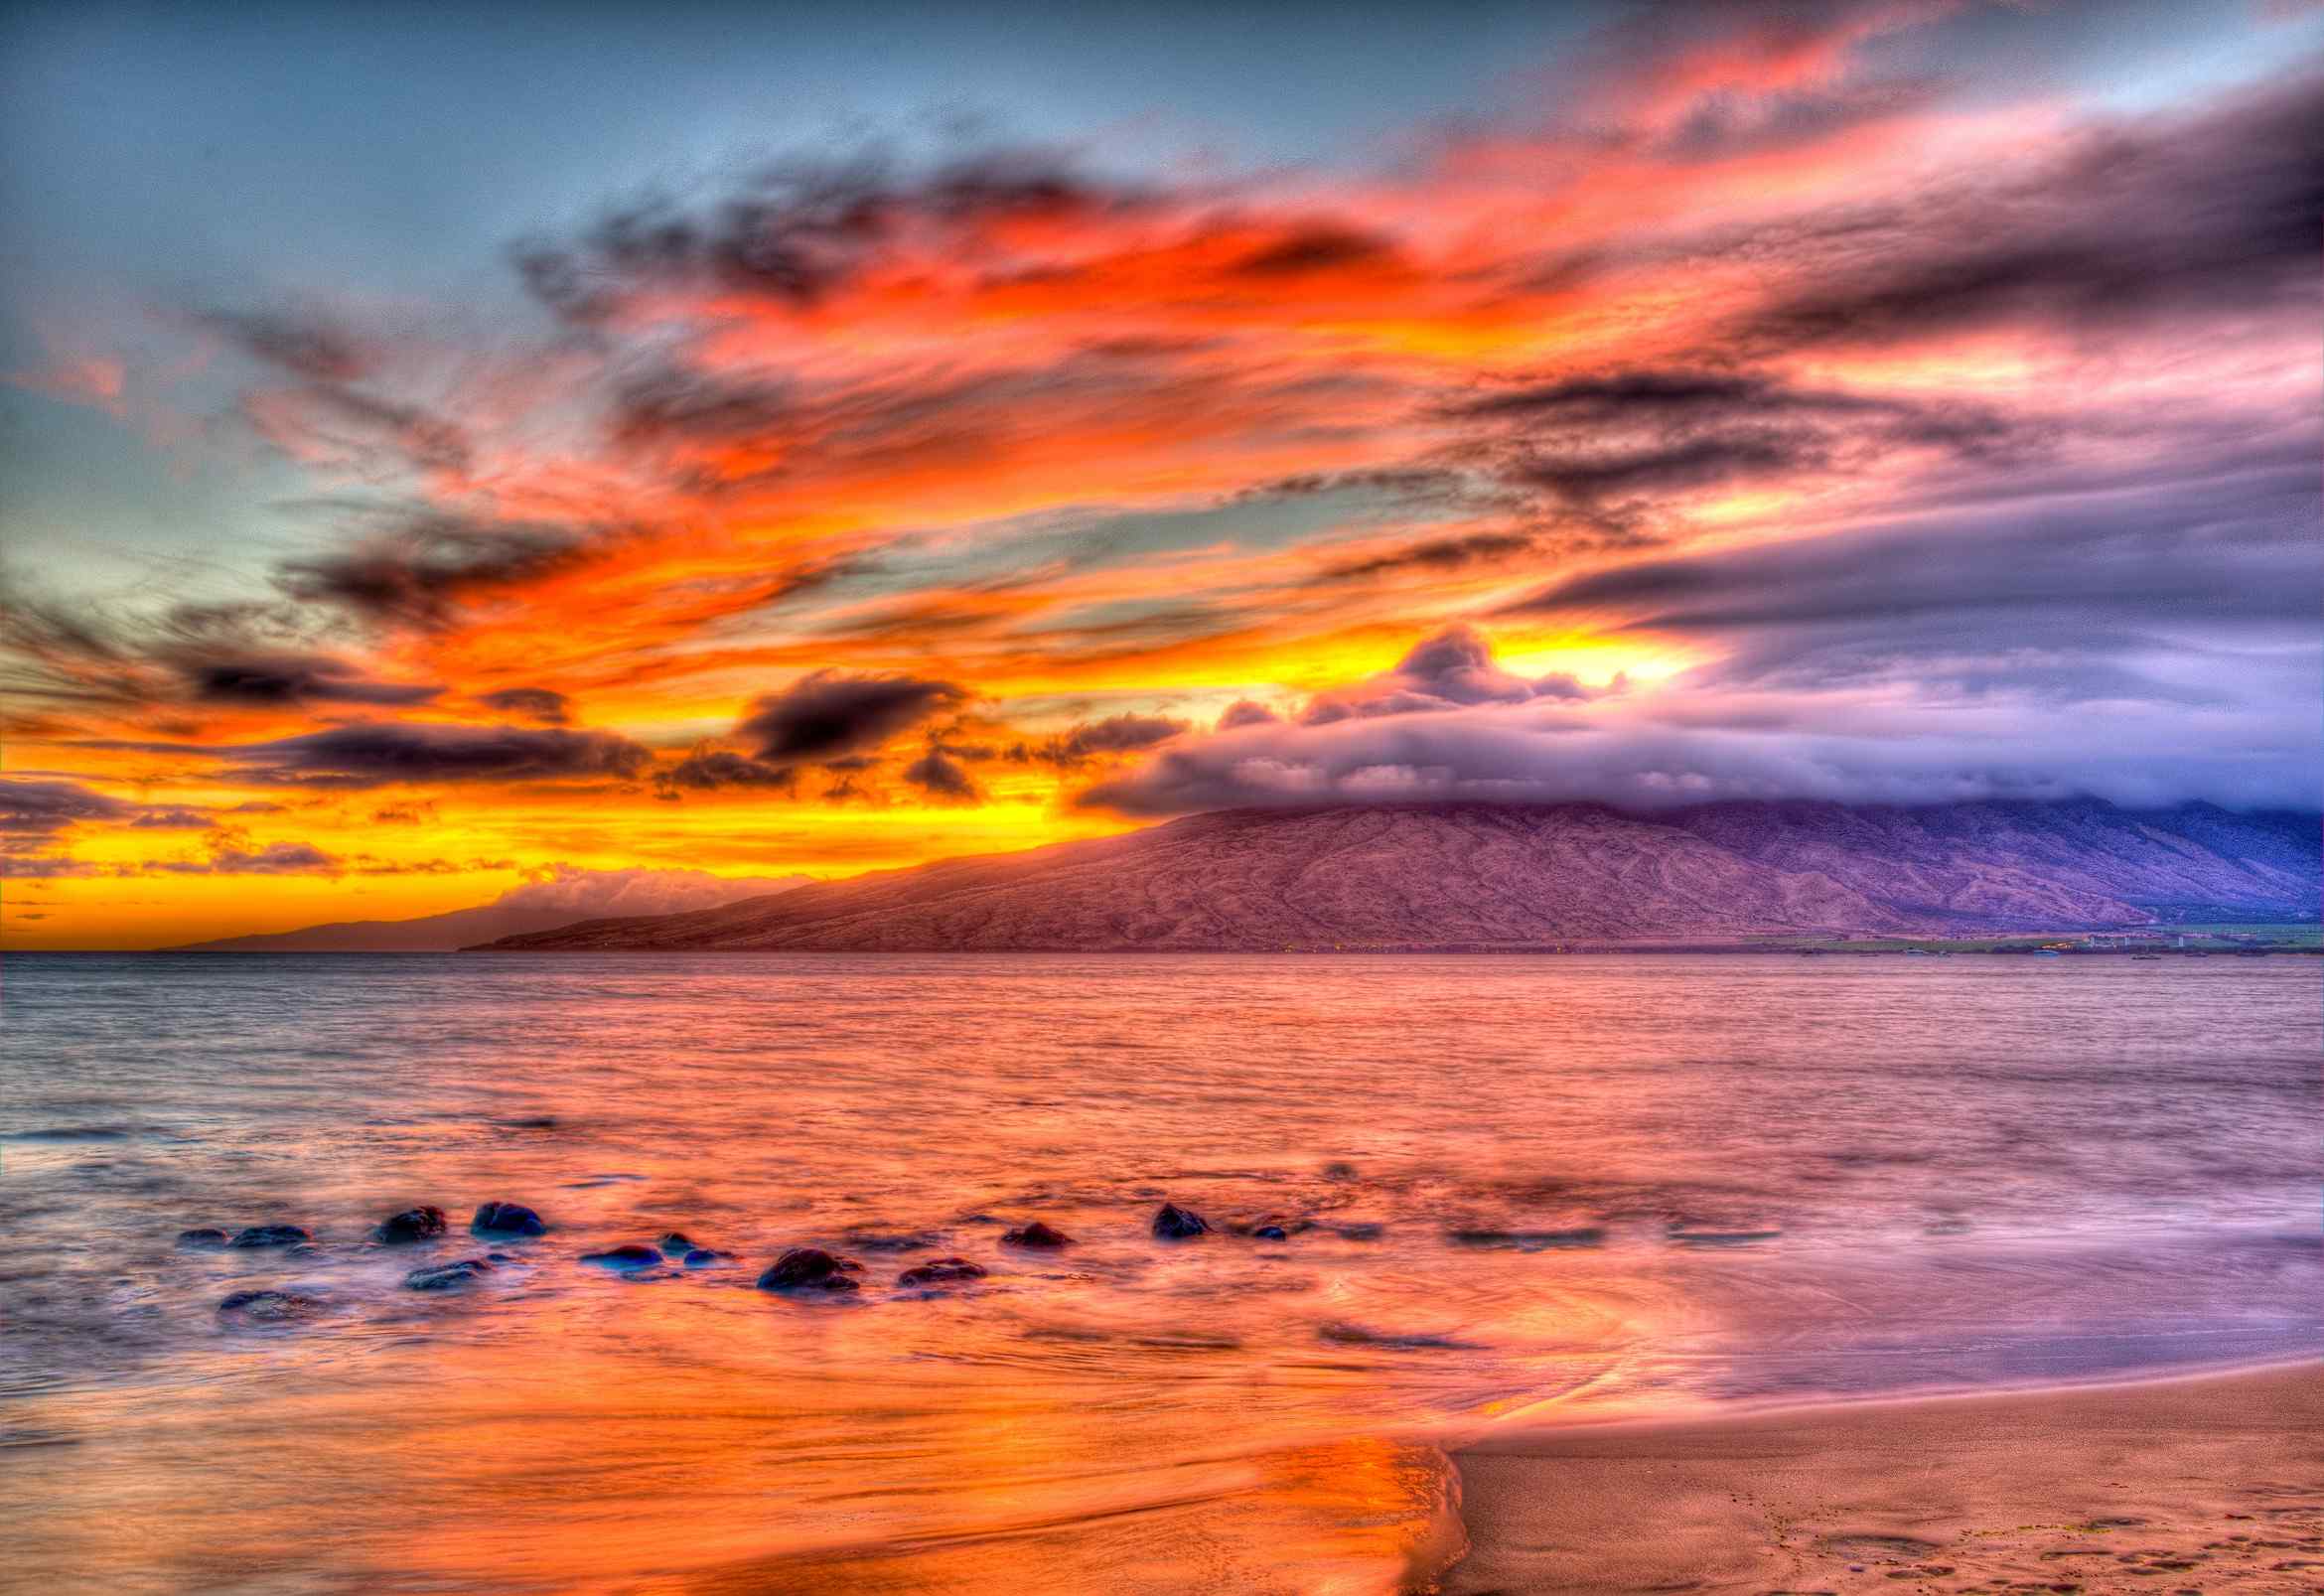 超唯美海边夕阳风景图片桌面壁纸